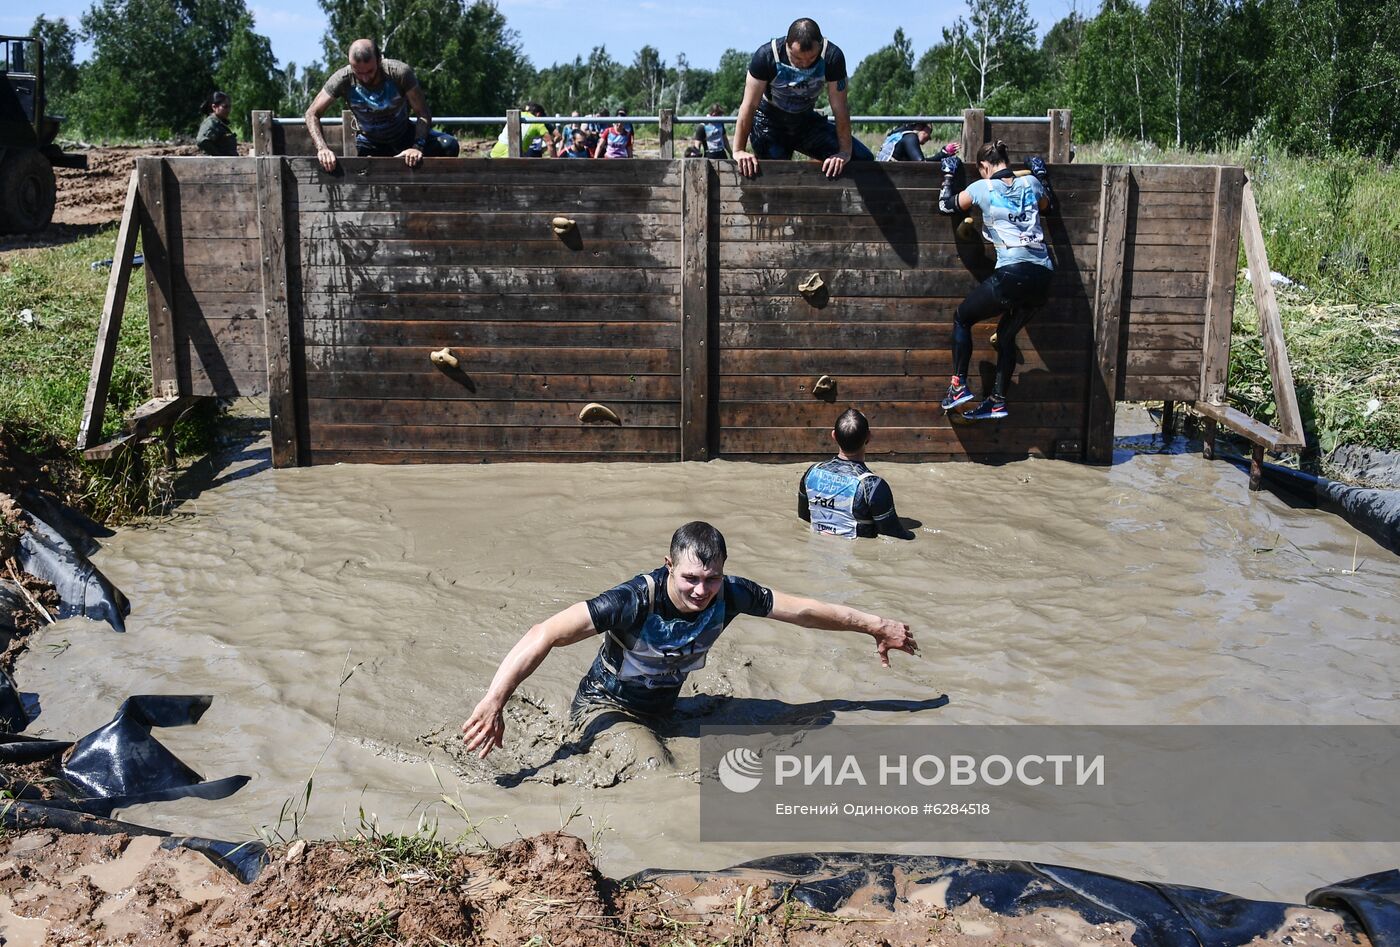 Военно-спортивная игра "Гонка героев" в Подмосковье 